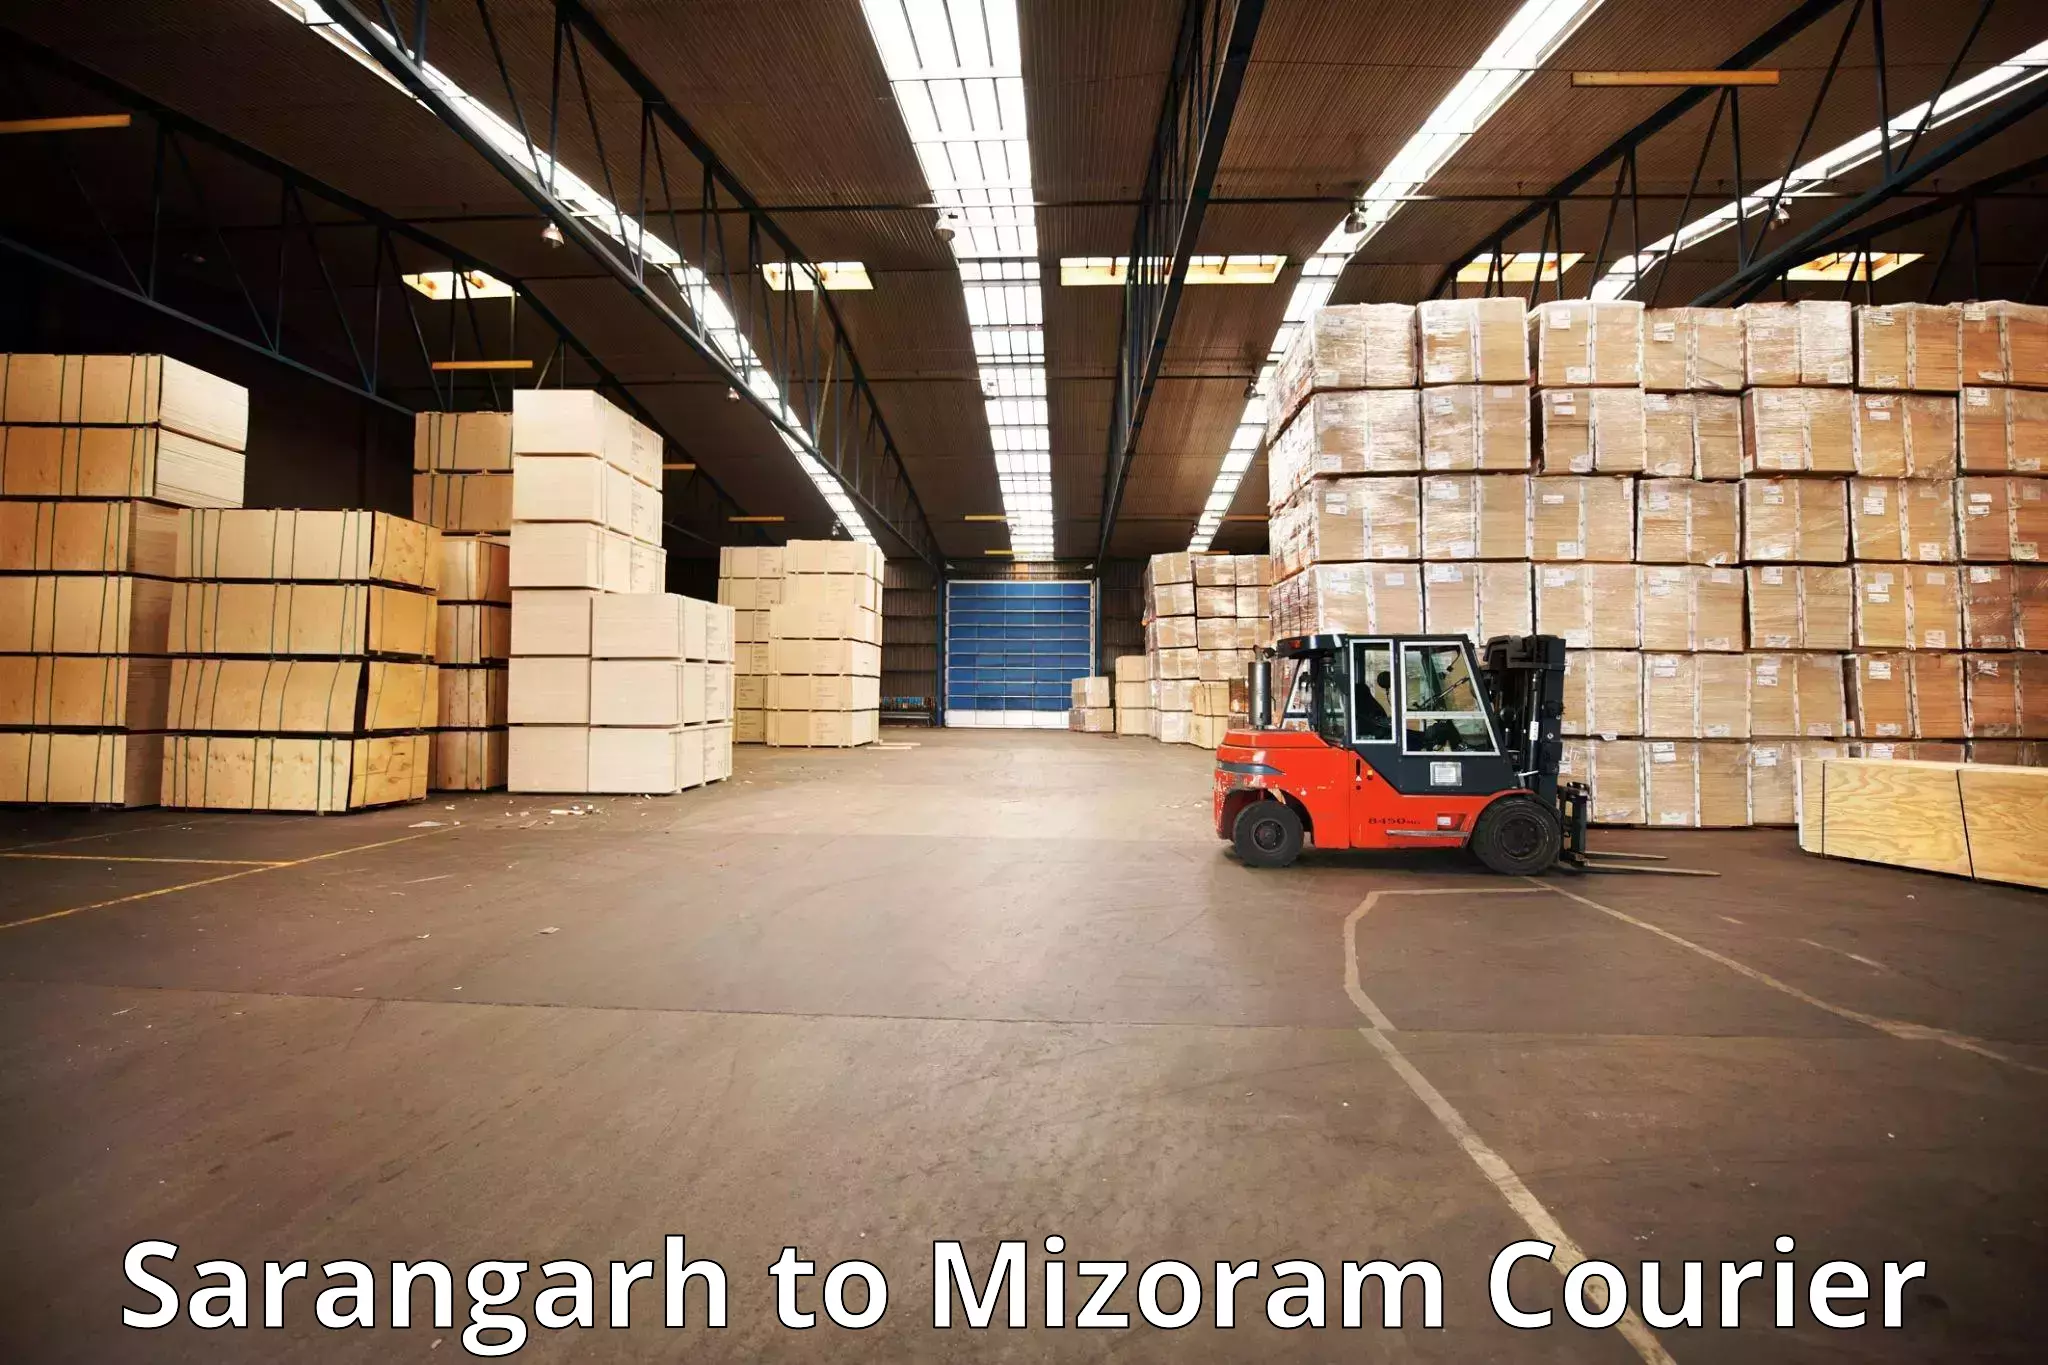 Luggage delivery providers Sarangarh to Mizoram